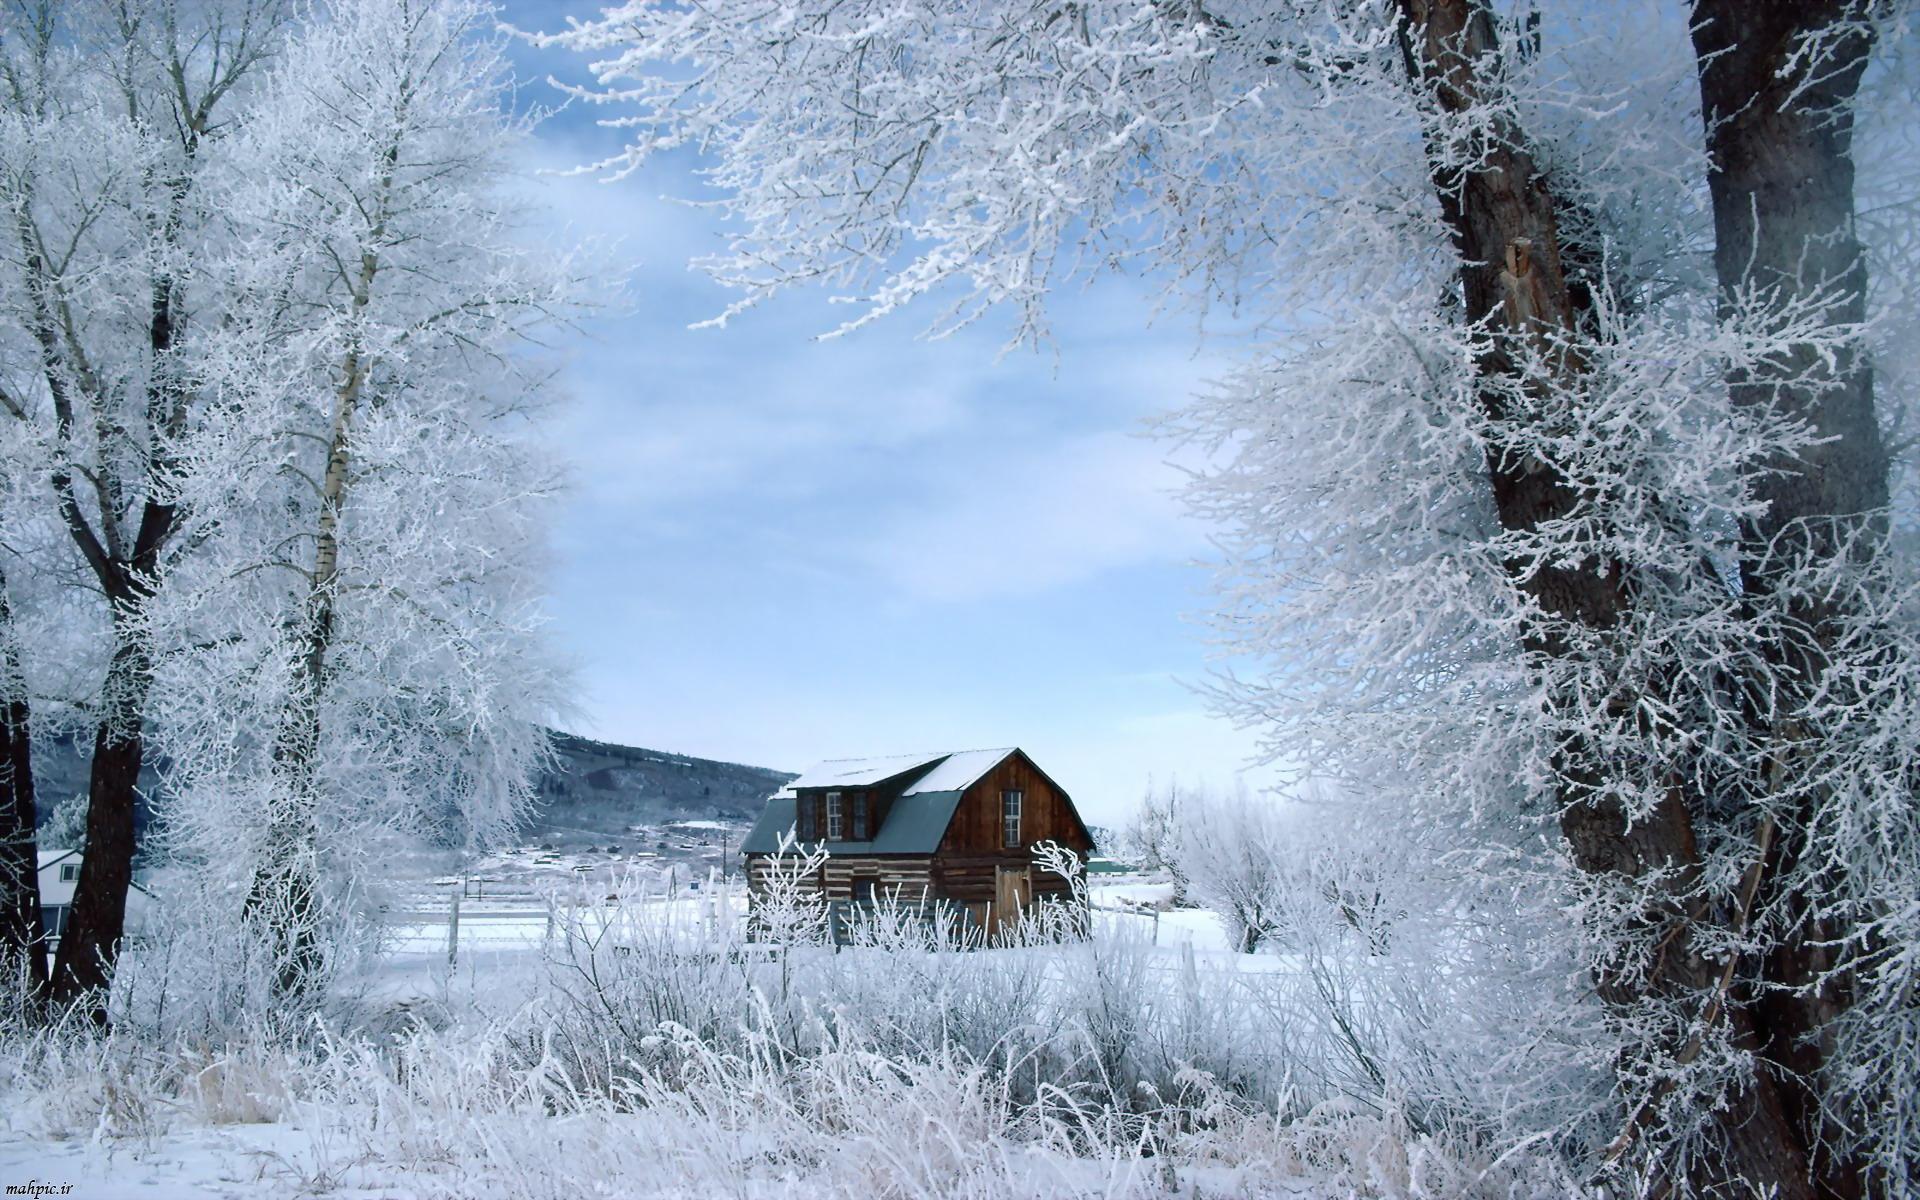 Скачать обои бесплатно Зима, Снег, Дерево, Дом, Поле, Ландшафт, Фотографии картинка на рабочий стол ПК